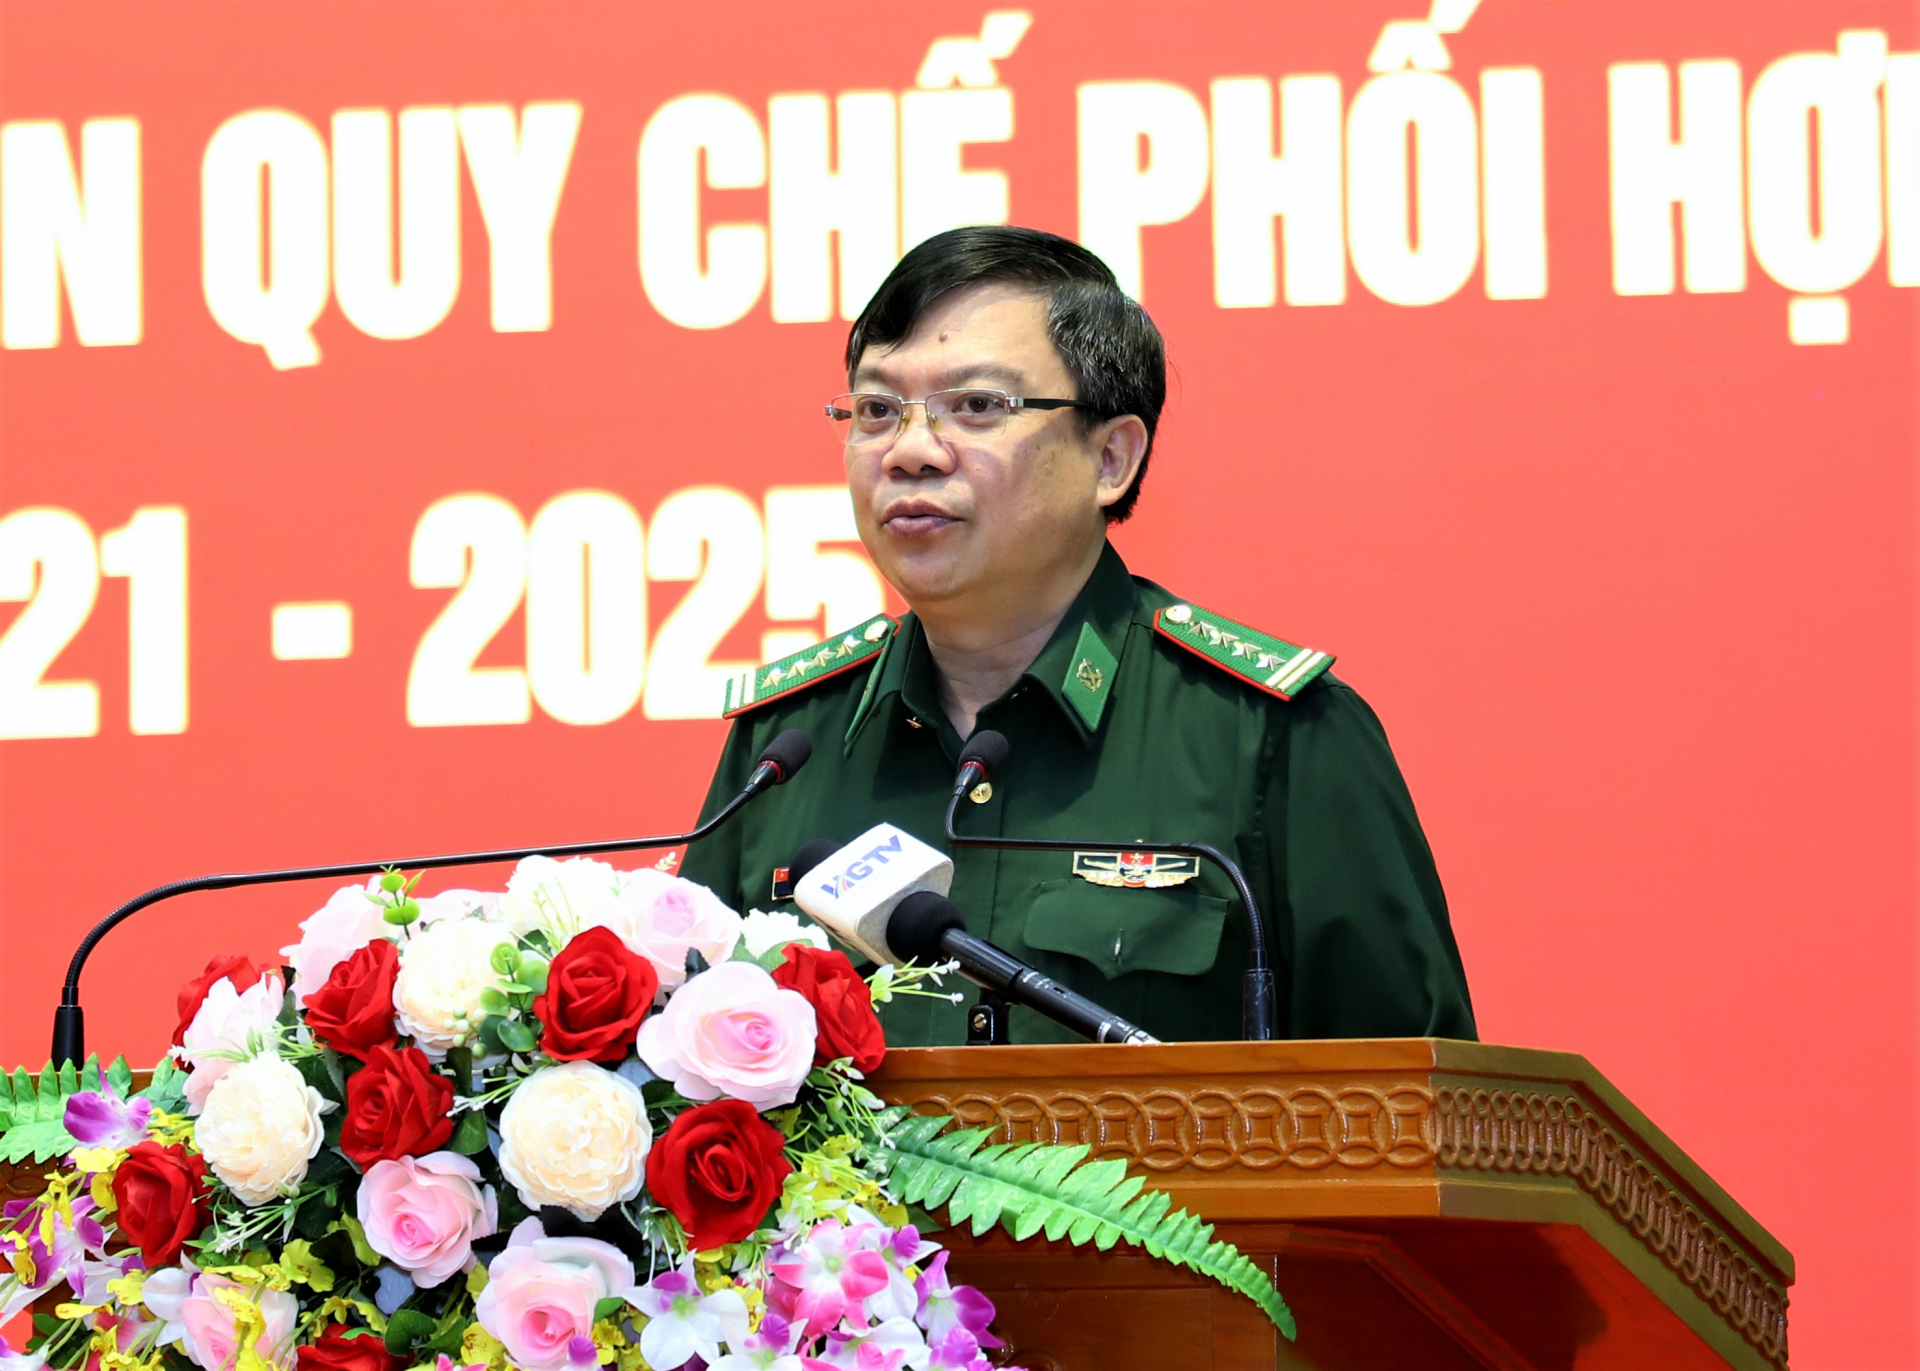 Đại tá Đào Hồng Hà, Chính ủy Bộ Chỉ huy BĐBP tỉnh báo cáo, thông tin một số kết quả nổi bật trong công tác phối hợp.